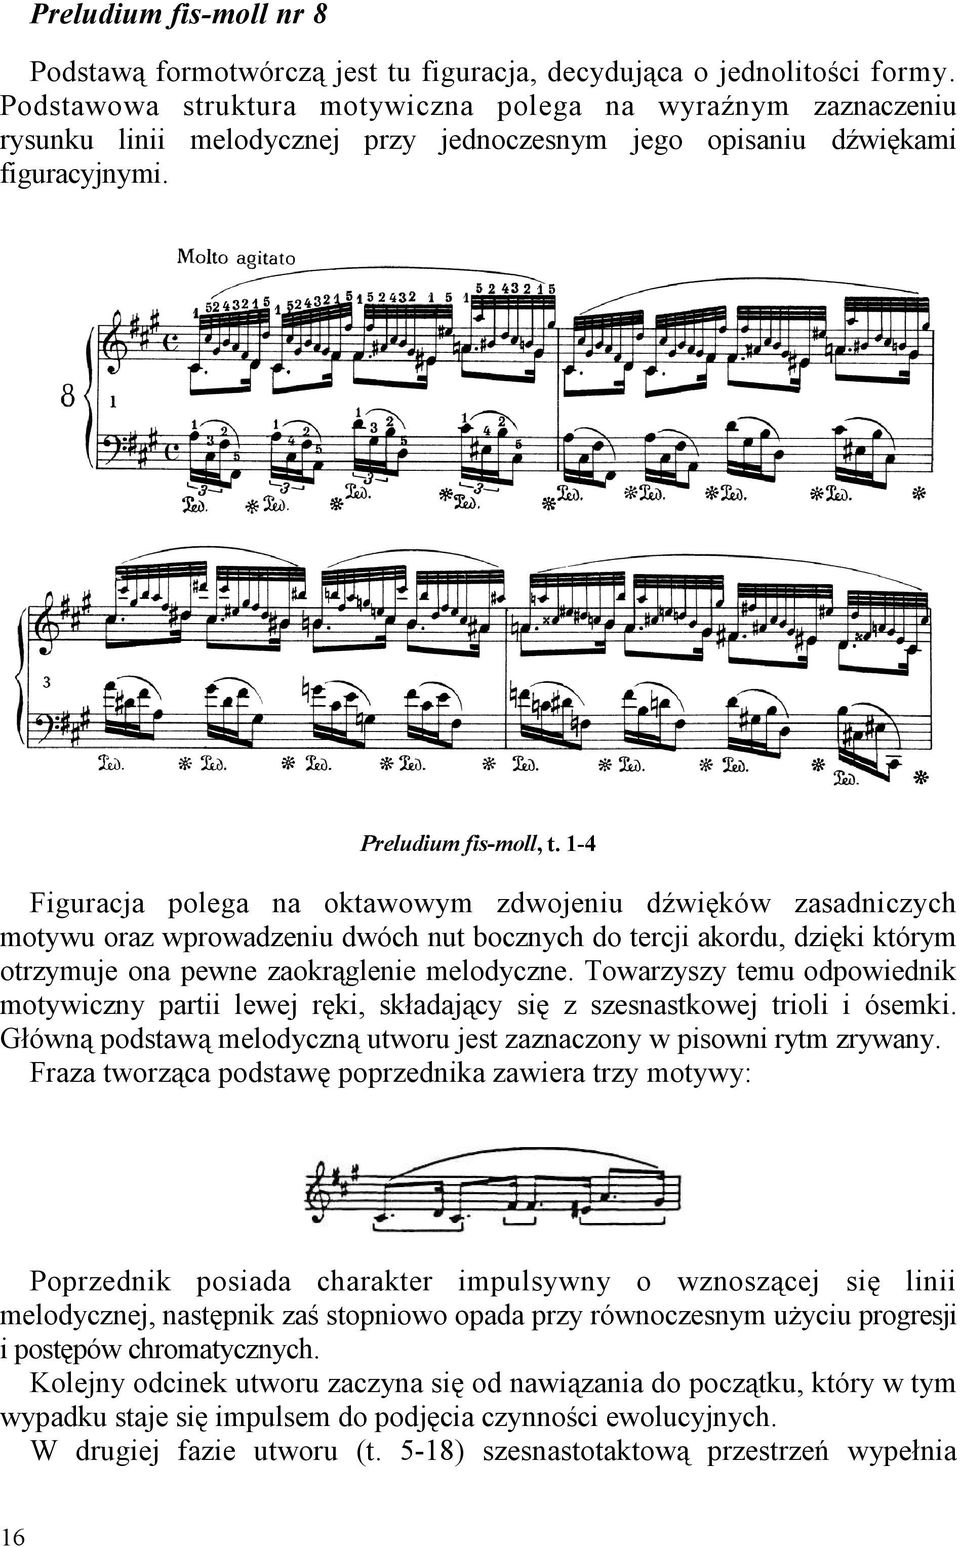 1-4 Figuracja polega na oktawowym zdwojeniu dźwięków zasadniczych motywu oraz wprowadzeniu dwóch nut bocznych do tercji akordu, dzięki którym otrzymuje ona pewne zaokrąglenie melodyczne.